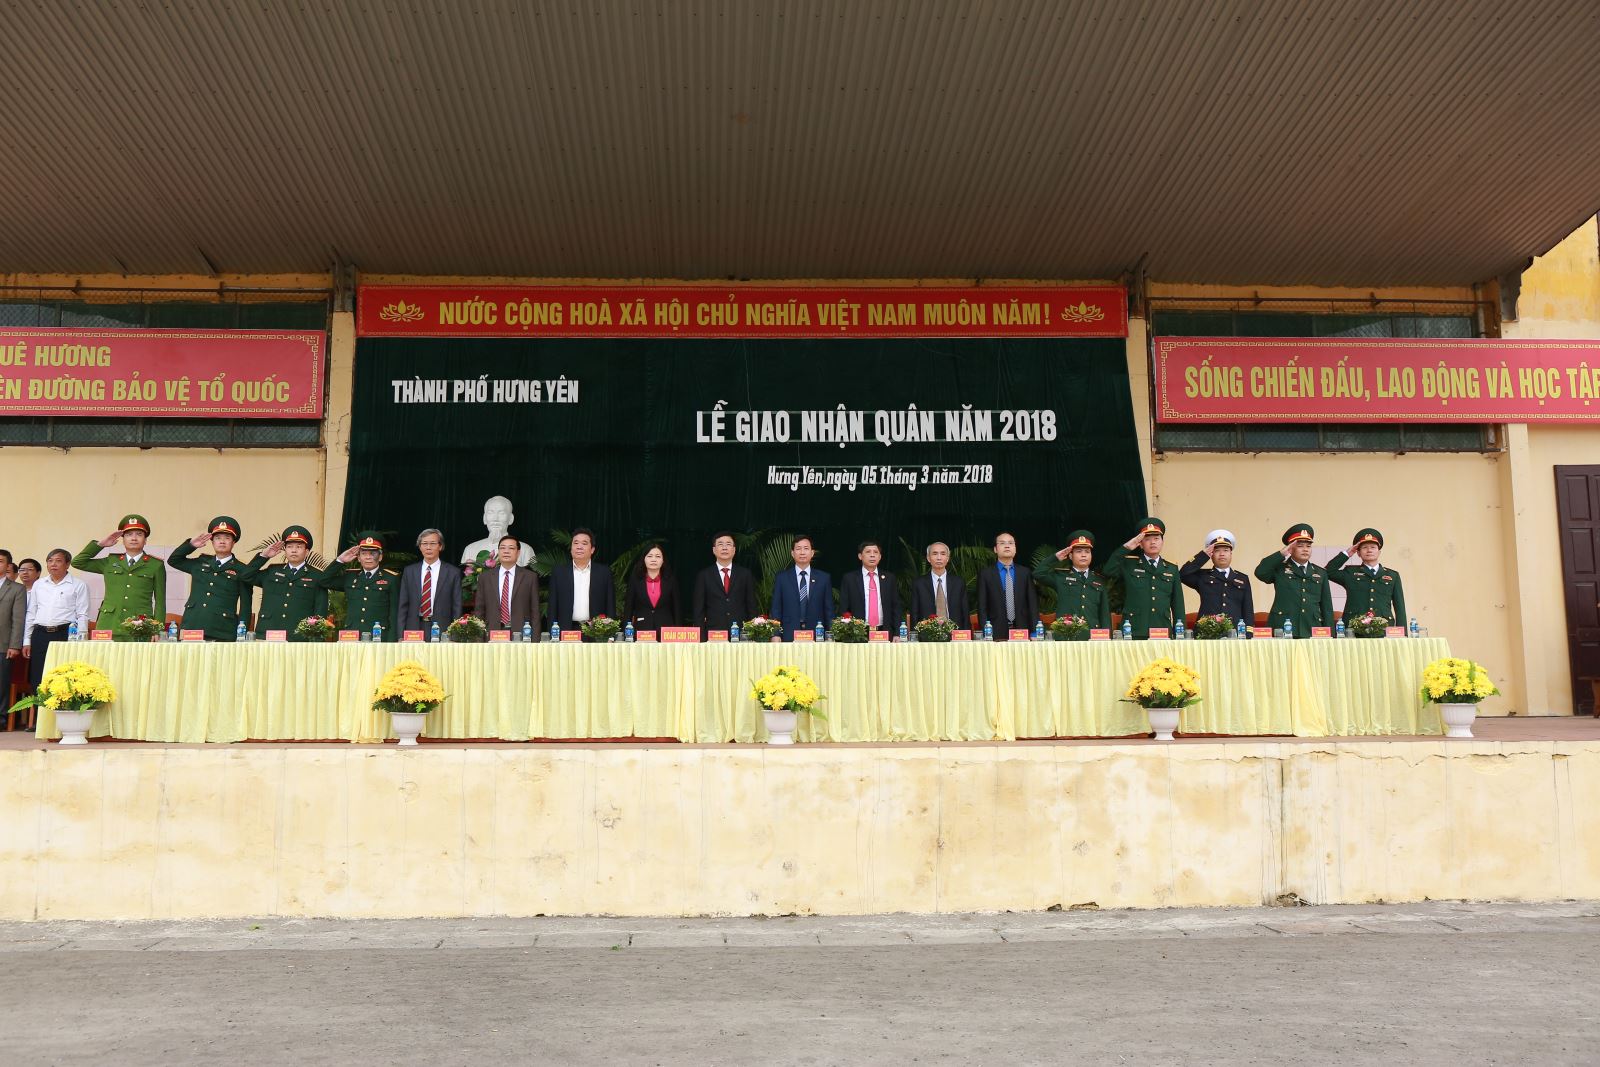 Thành phố Hưng Yên tổ chức lễ giao nhận quân năm 2018